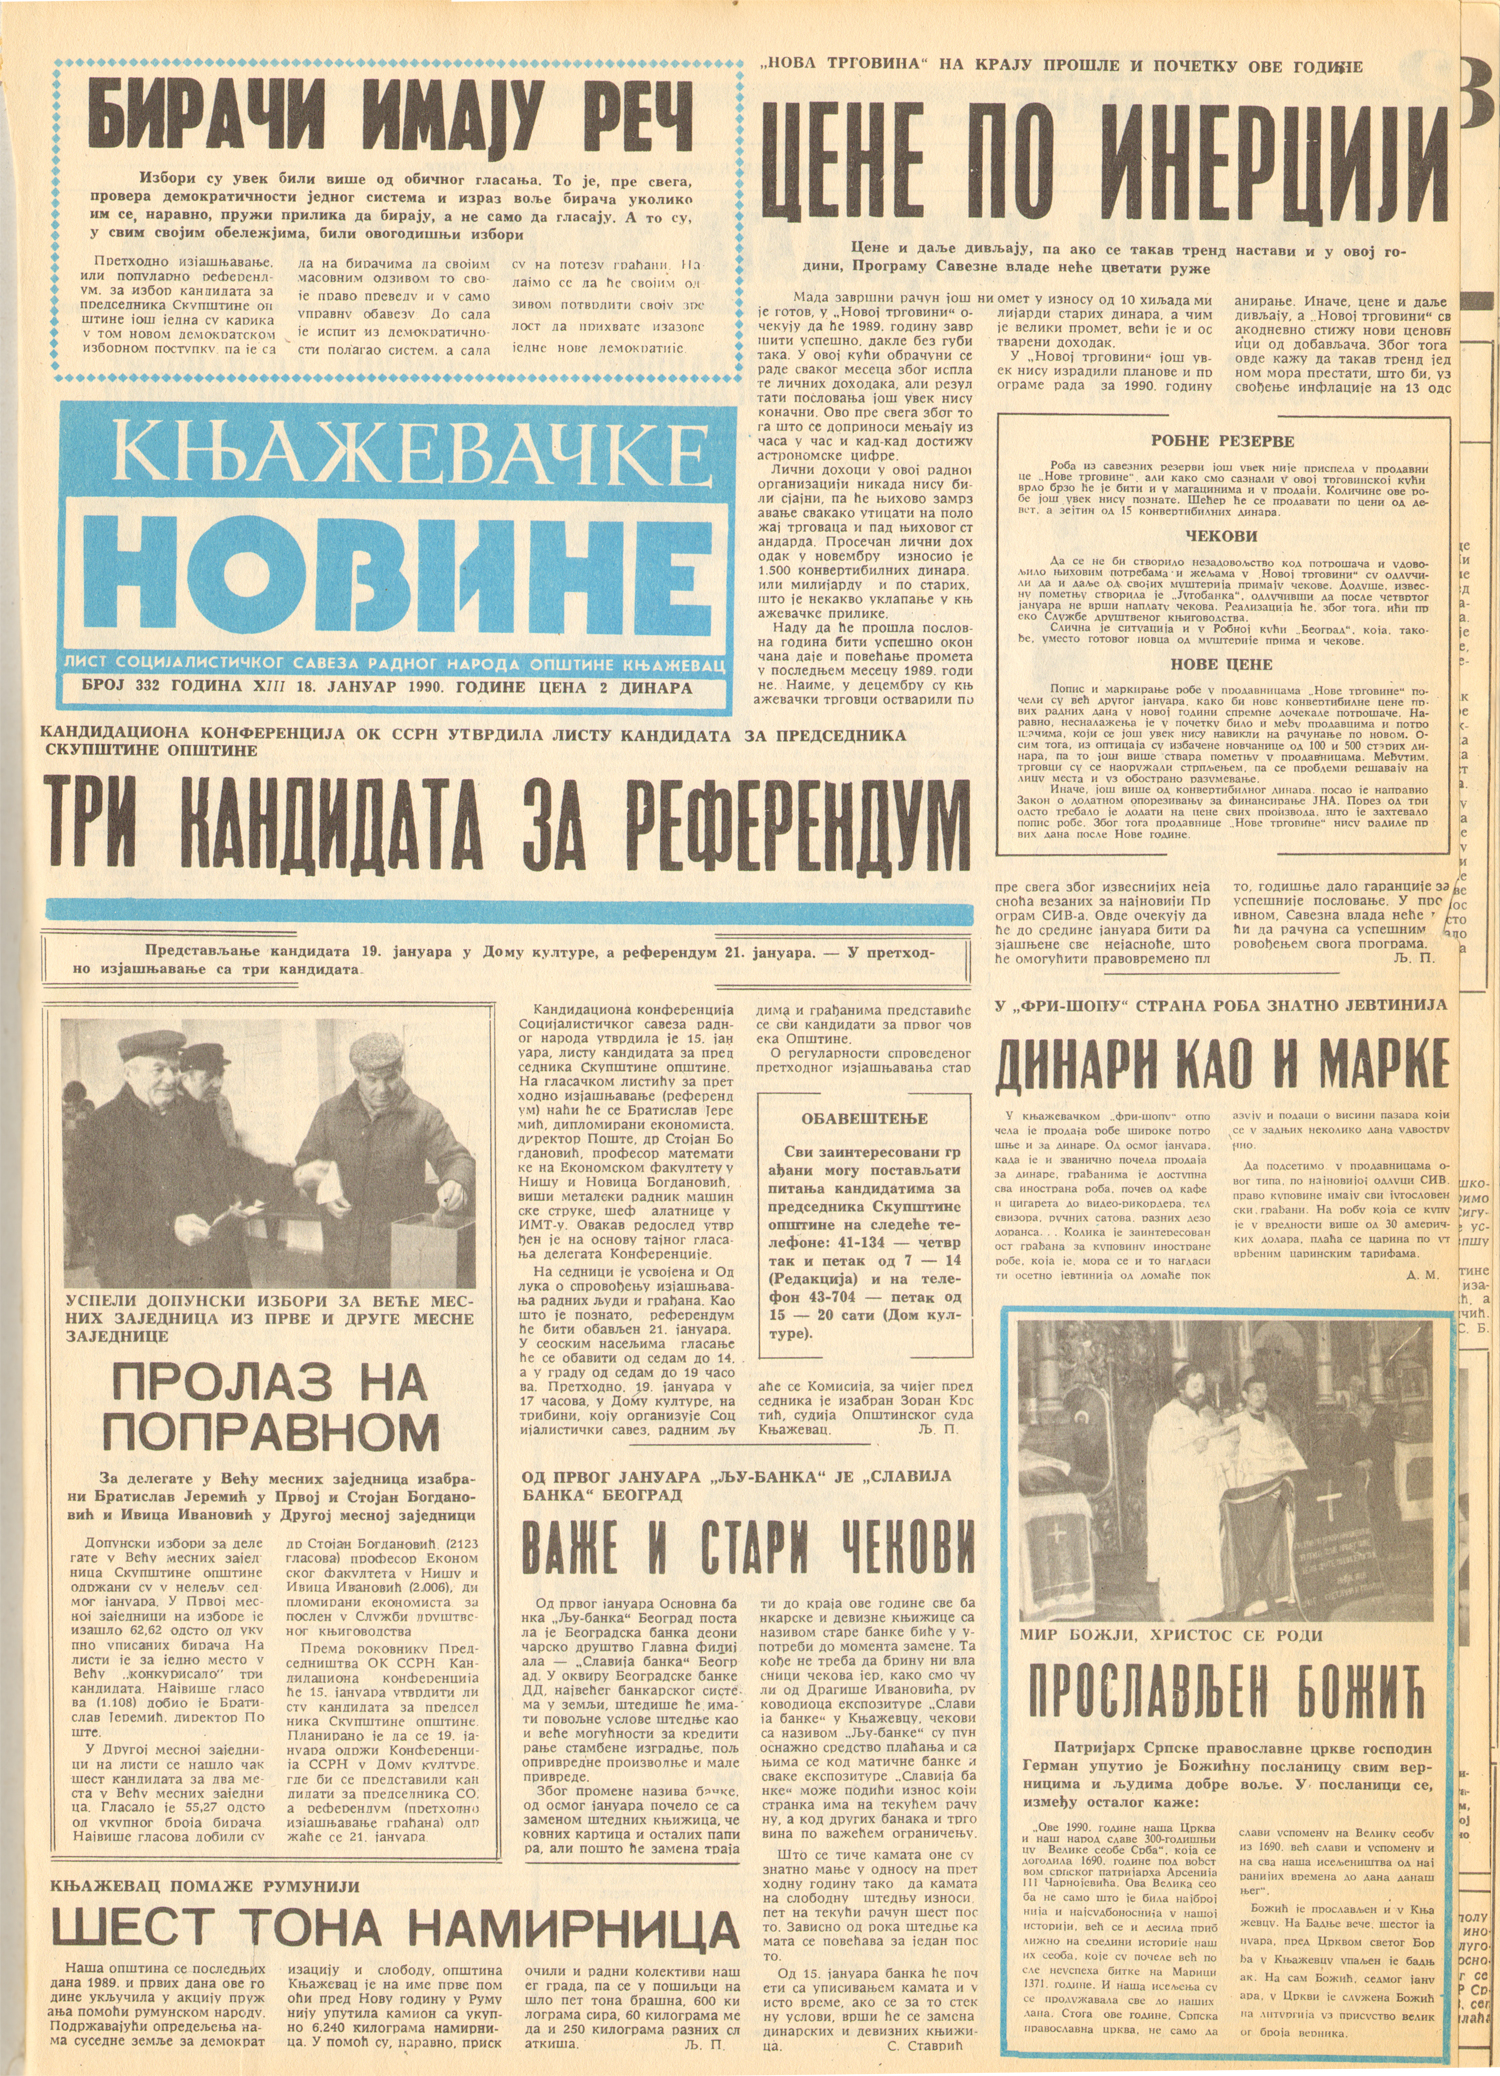 Књажевачке новине, број 332, година 1990